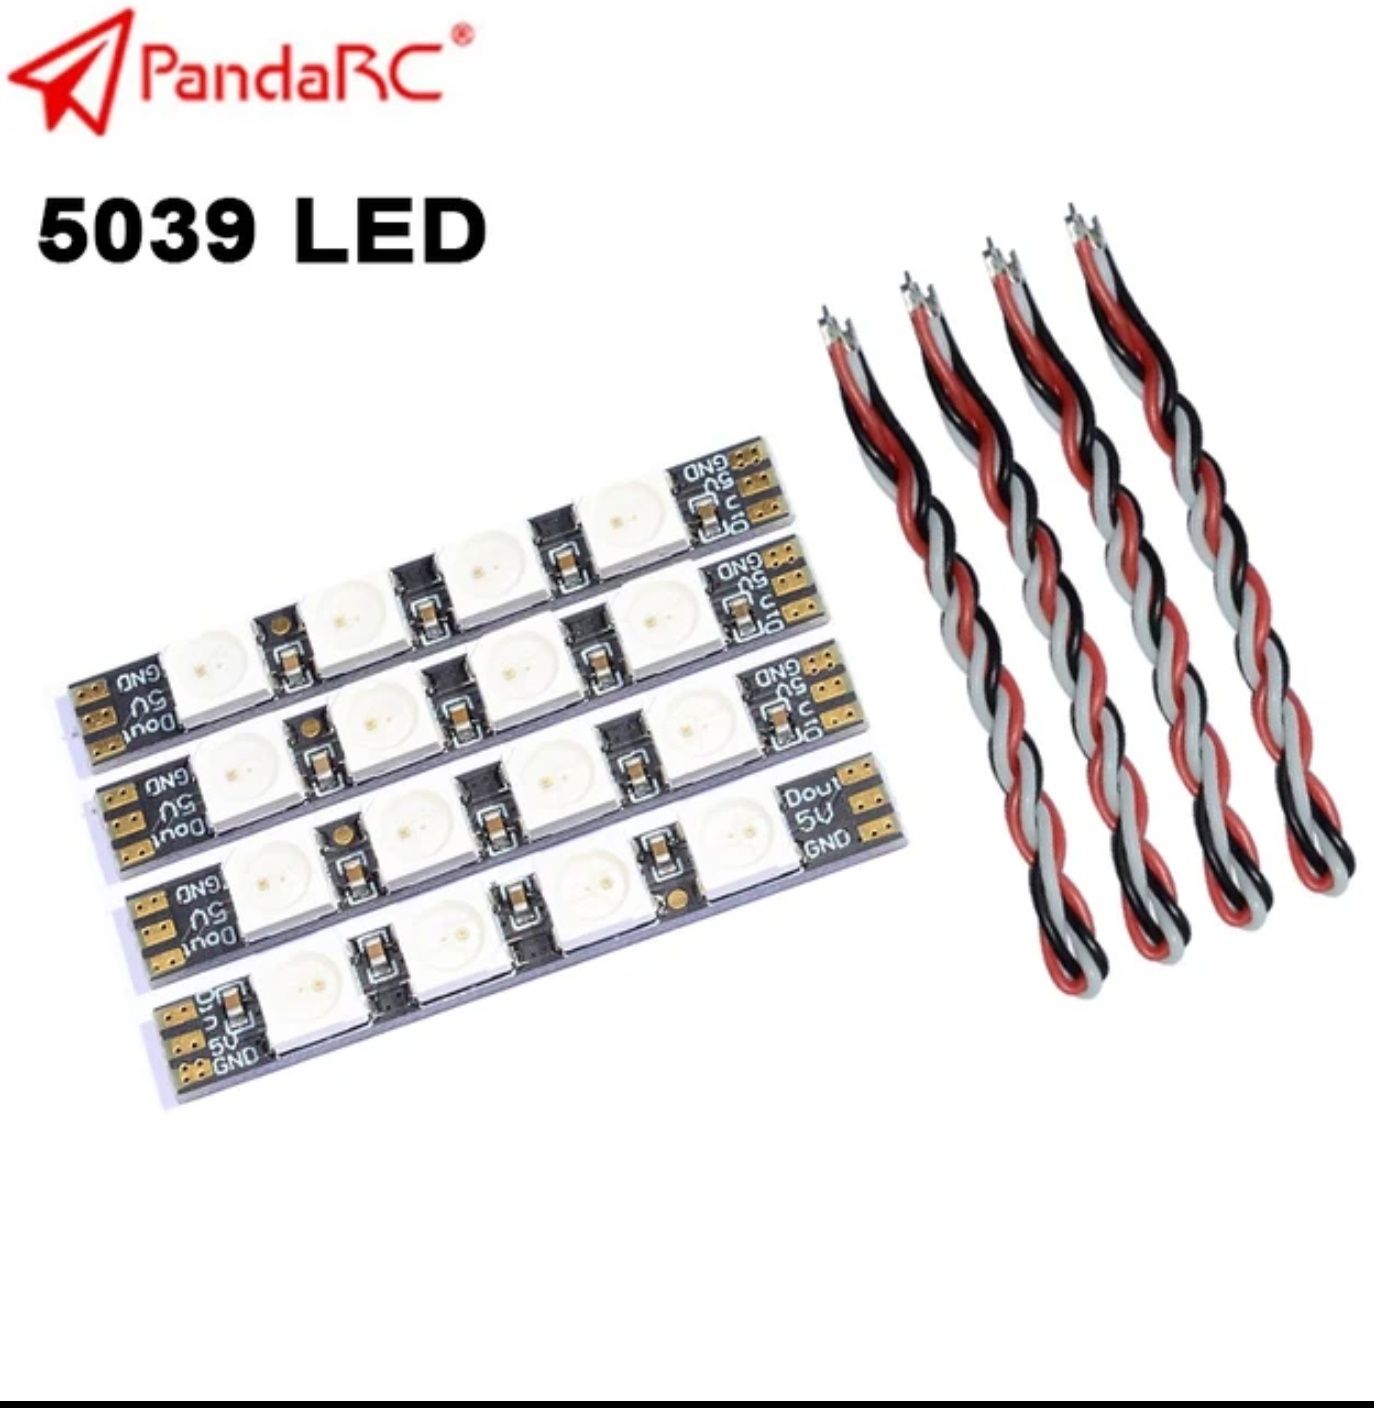 PandaRC LED0539/SPEEDEBEE 2812 armlight лед підсвітка для фпв/FPV дрон